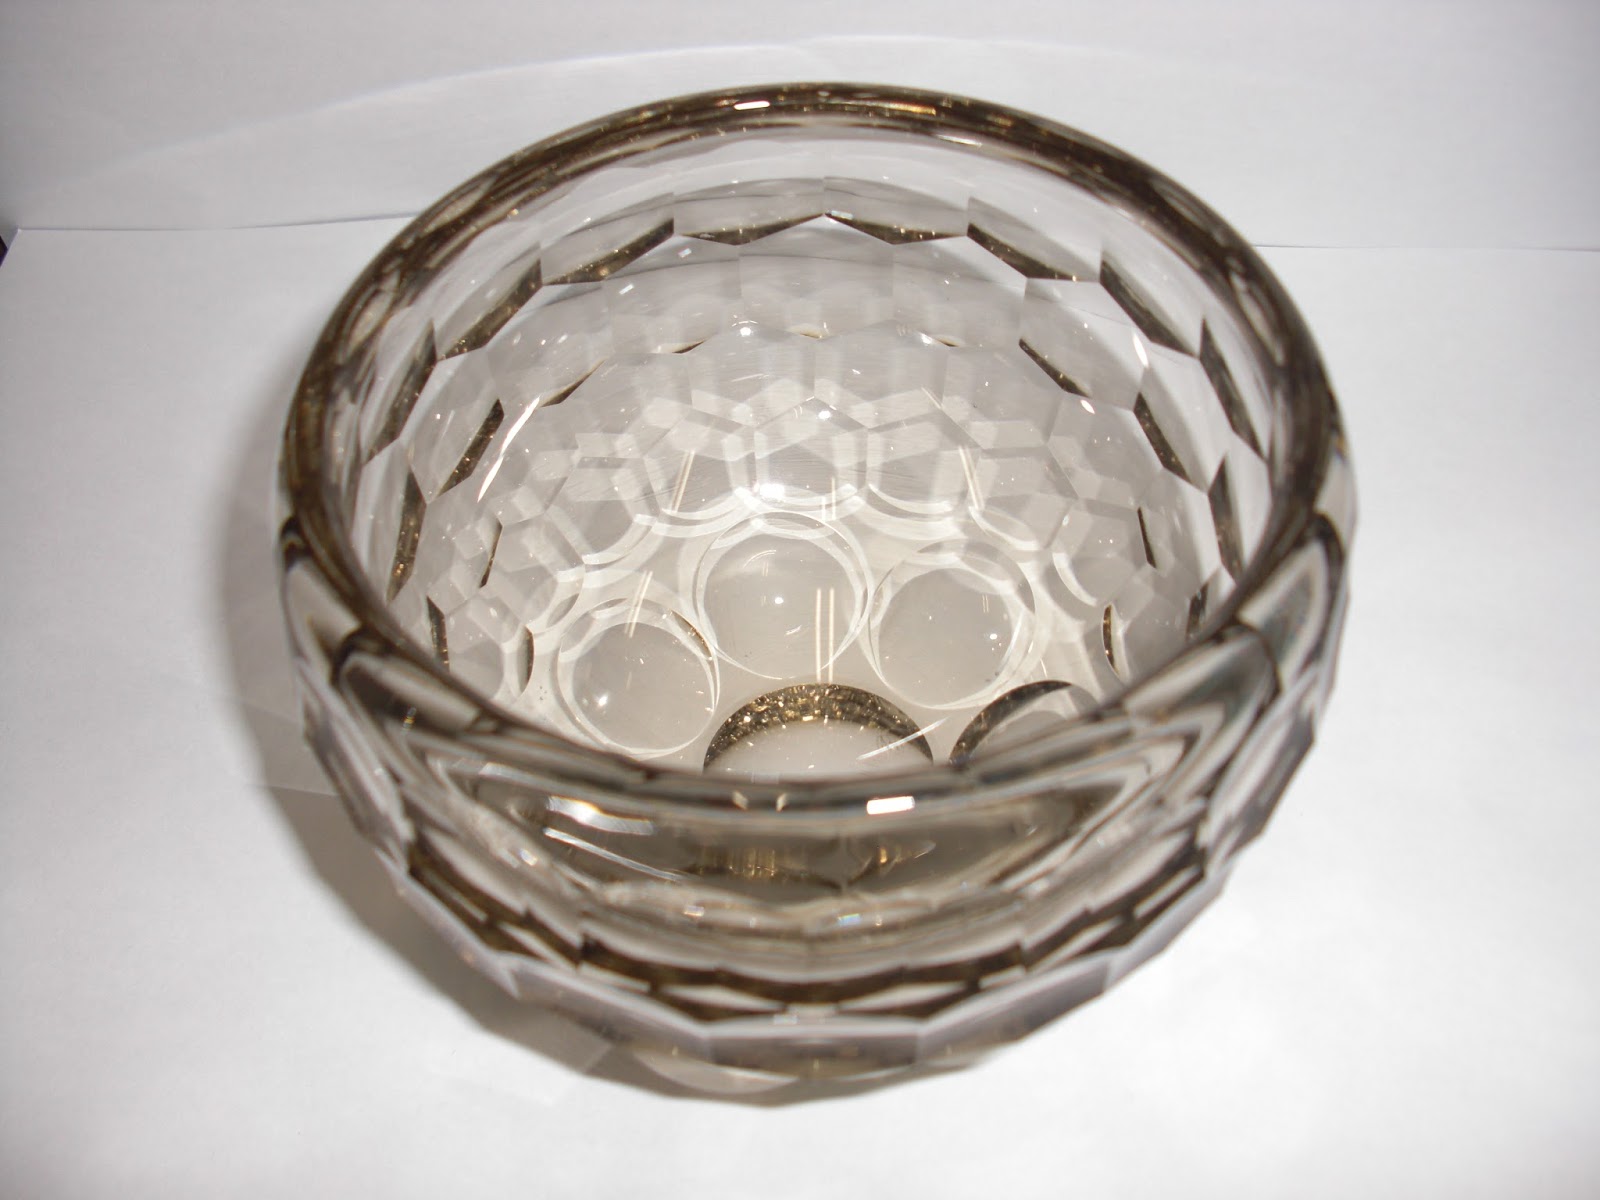 愛品倶楽部 柏店のリサイクルな日々: 和食器 由水常雄作 正倉院復元ガラス 白琉璃碗入荷しました